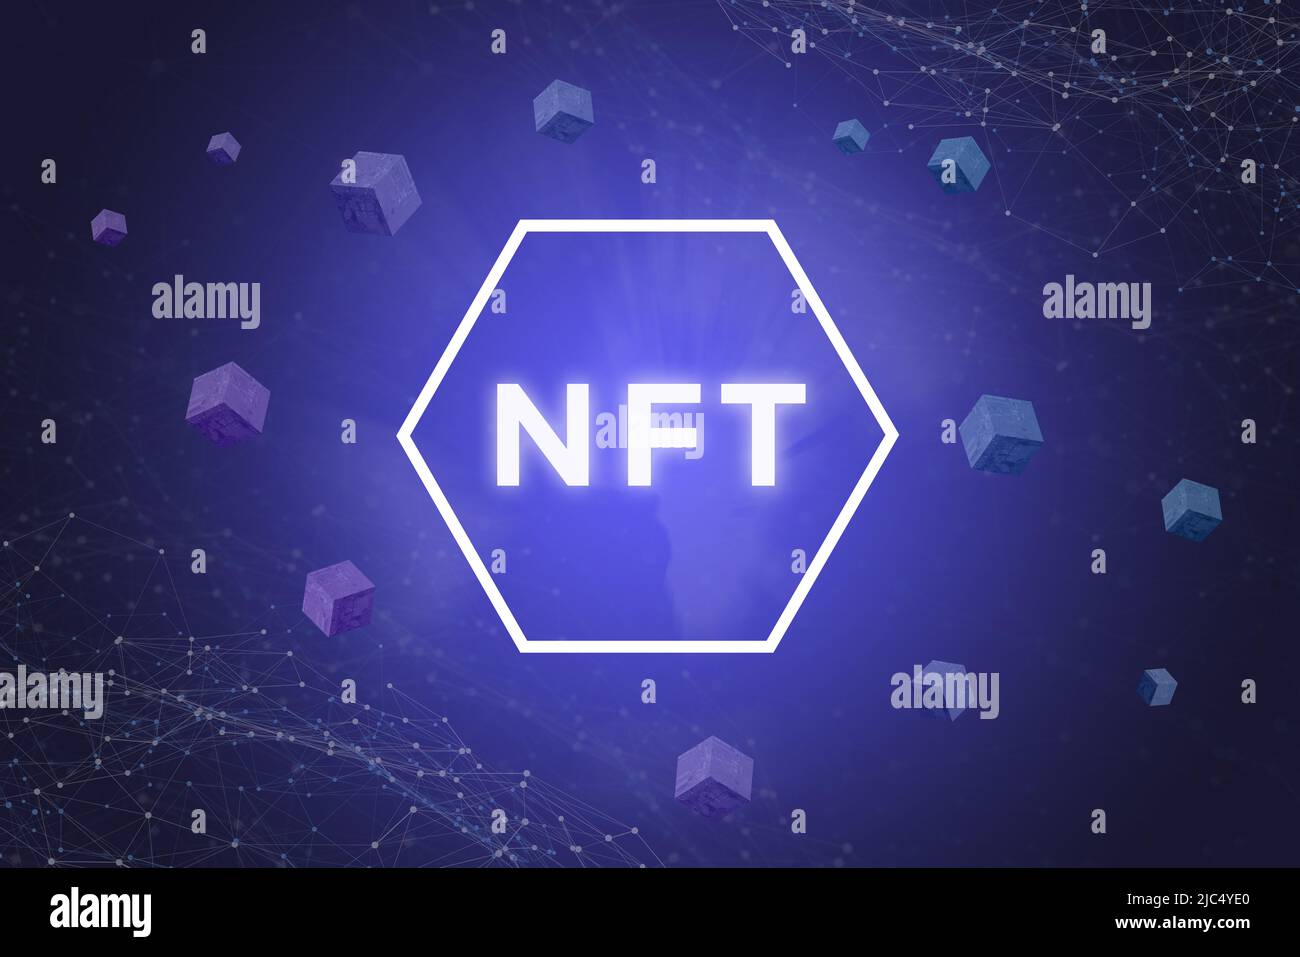 Ilustración NFT 3D con texto en hexágono rodeado de bloques de bloqueo y nodos de red sobre fondo azul Foto de stock